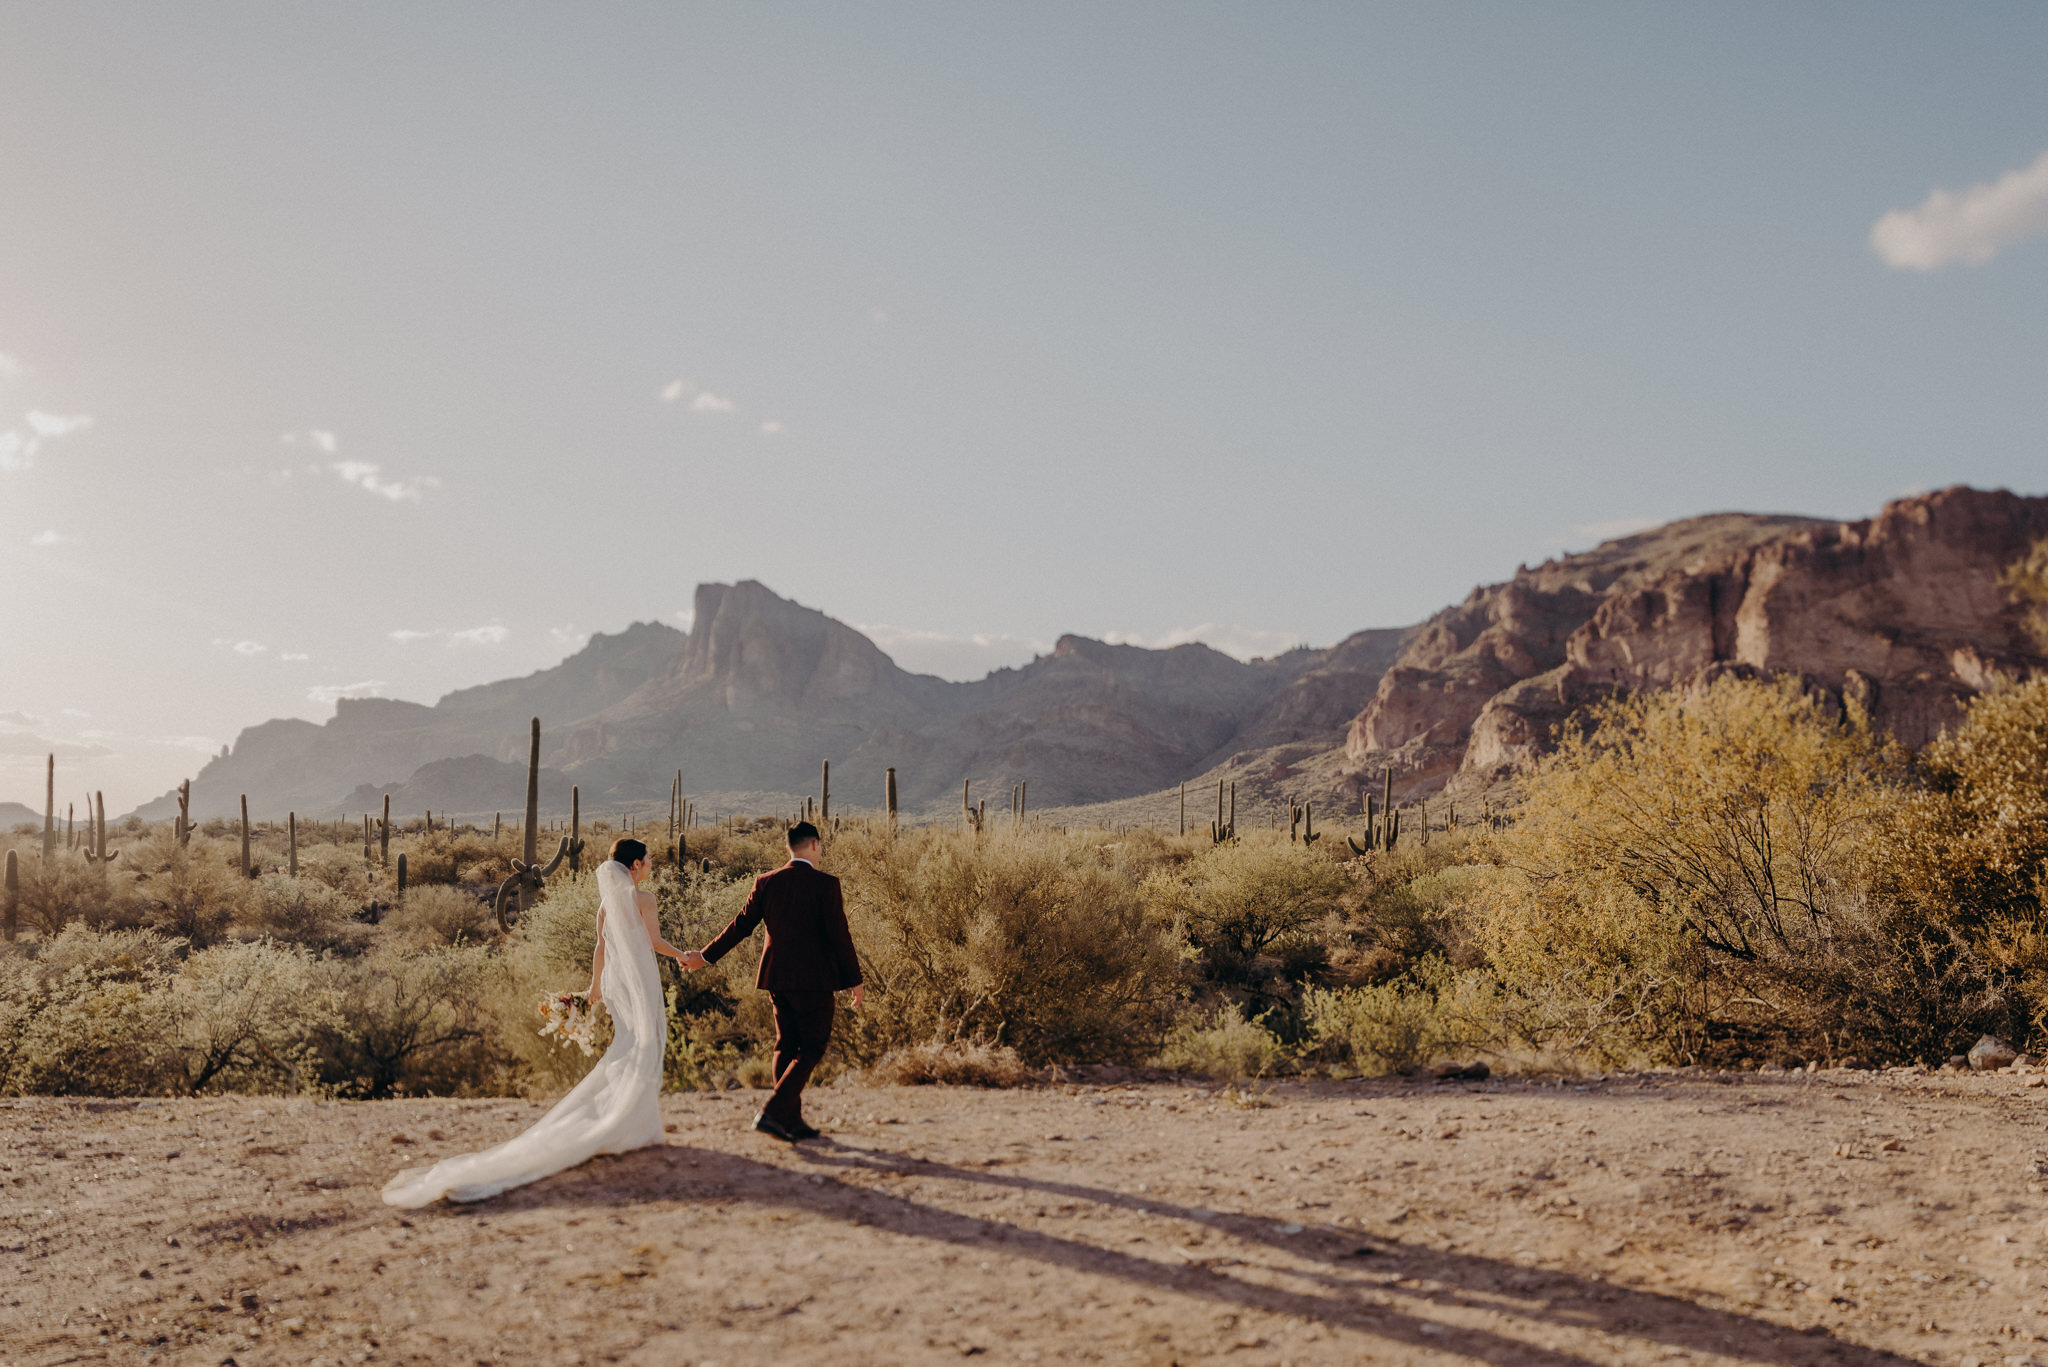 california wedding photograhers - desert elopement - supersition mountains - isaiahandtaylor.com-89.jpg